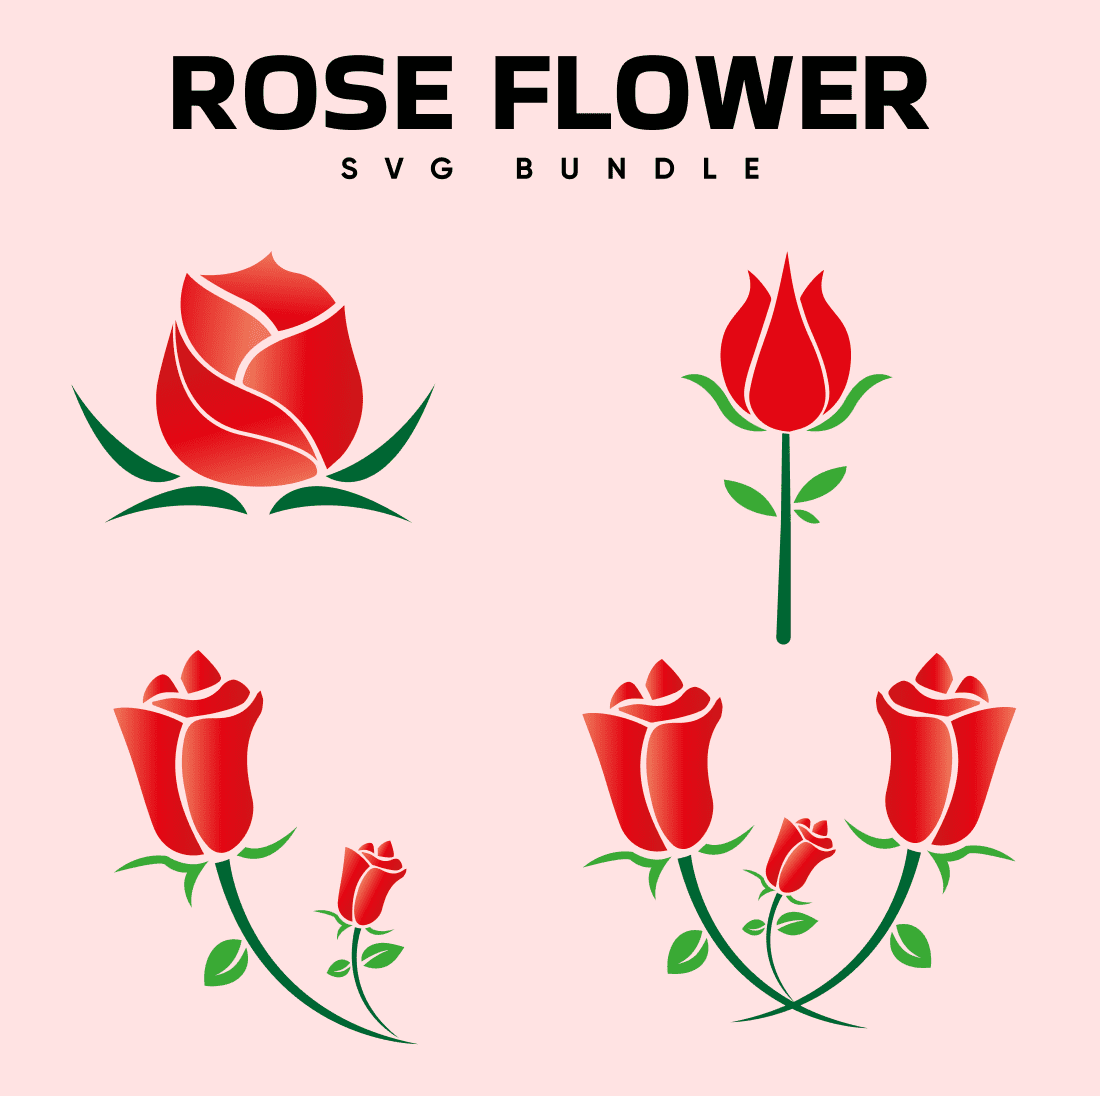 Rose SVG Flowers SVG Rose Bundle SVG Rose Silhouette Rose 